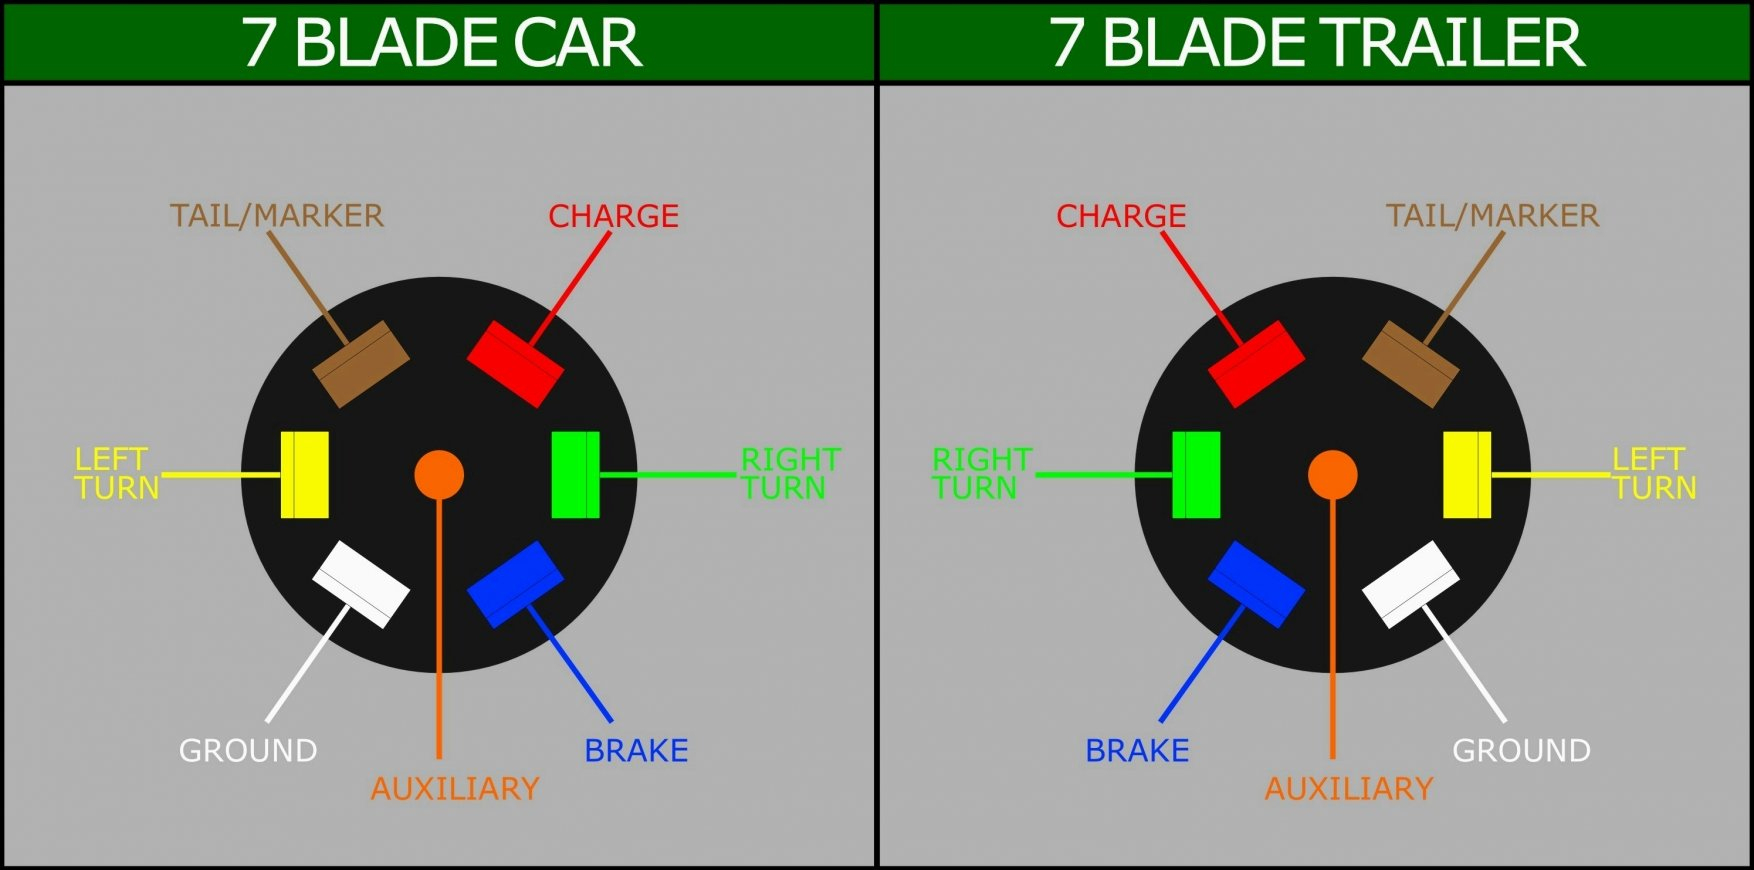 7 Blade Trailer Wiring Diagram - Wiring Diagrams Hubs - Utility Trailer Wiring Diagram